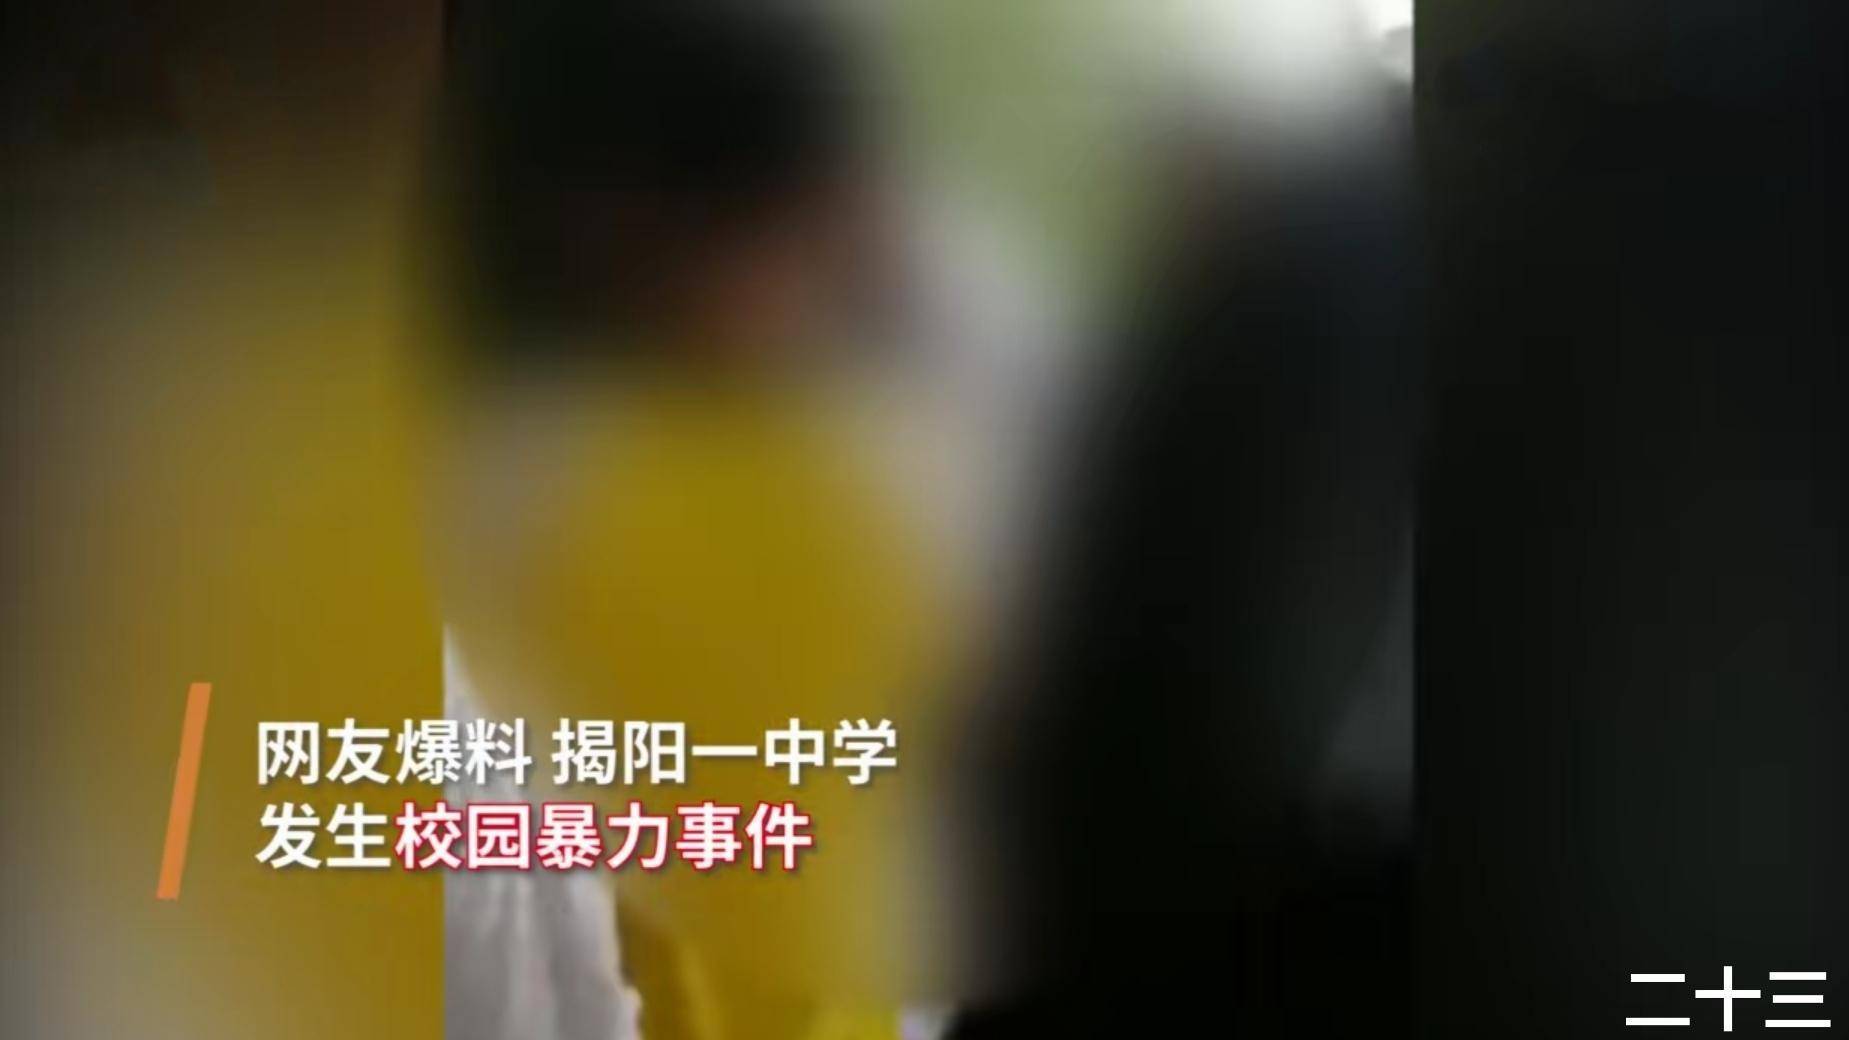 广东揭阳发生校园暴力事件,一男生被人用脚踹,棍棒击头